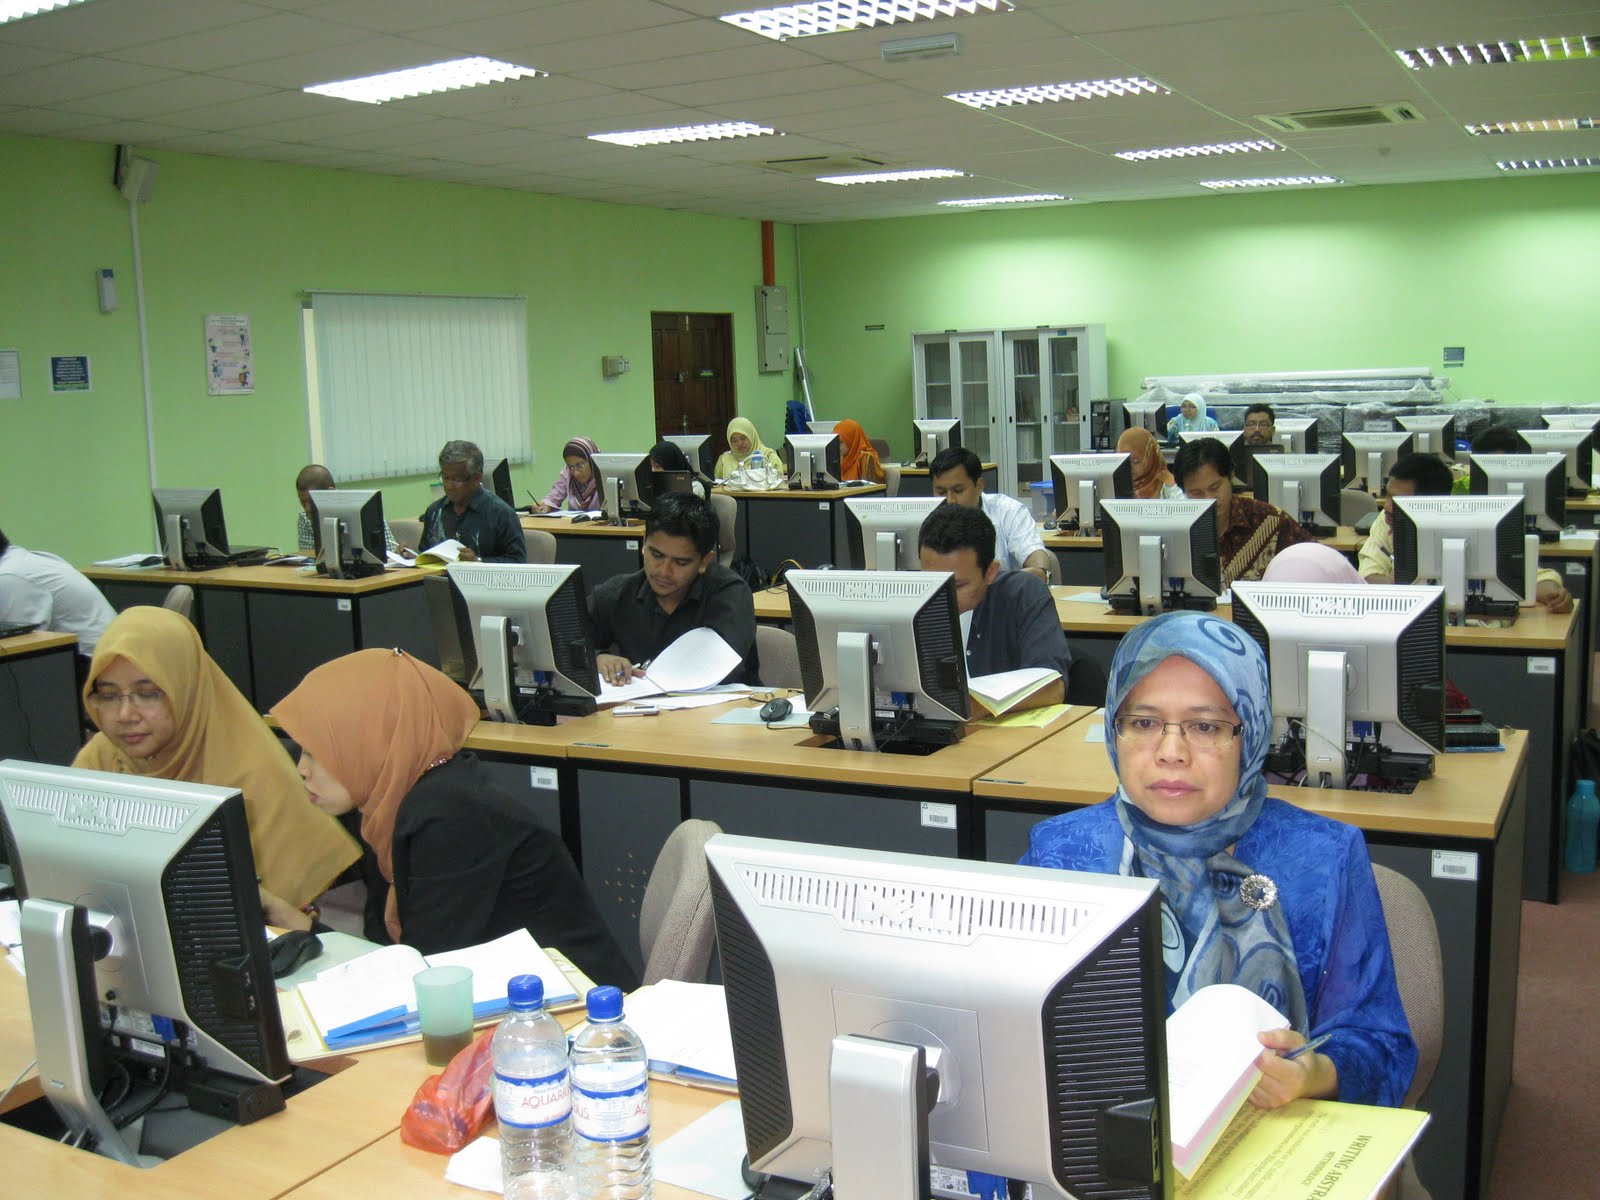 Jurnal Publication Course at Universiti Malaysia Pahang